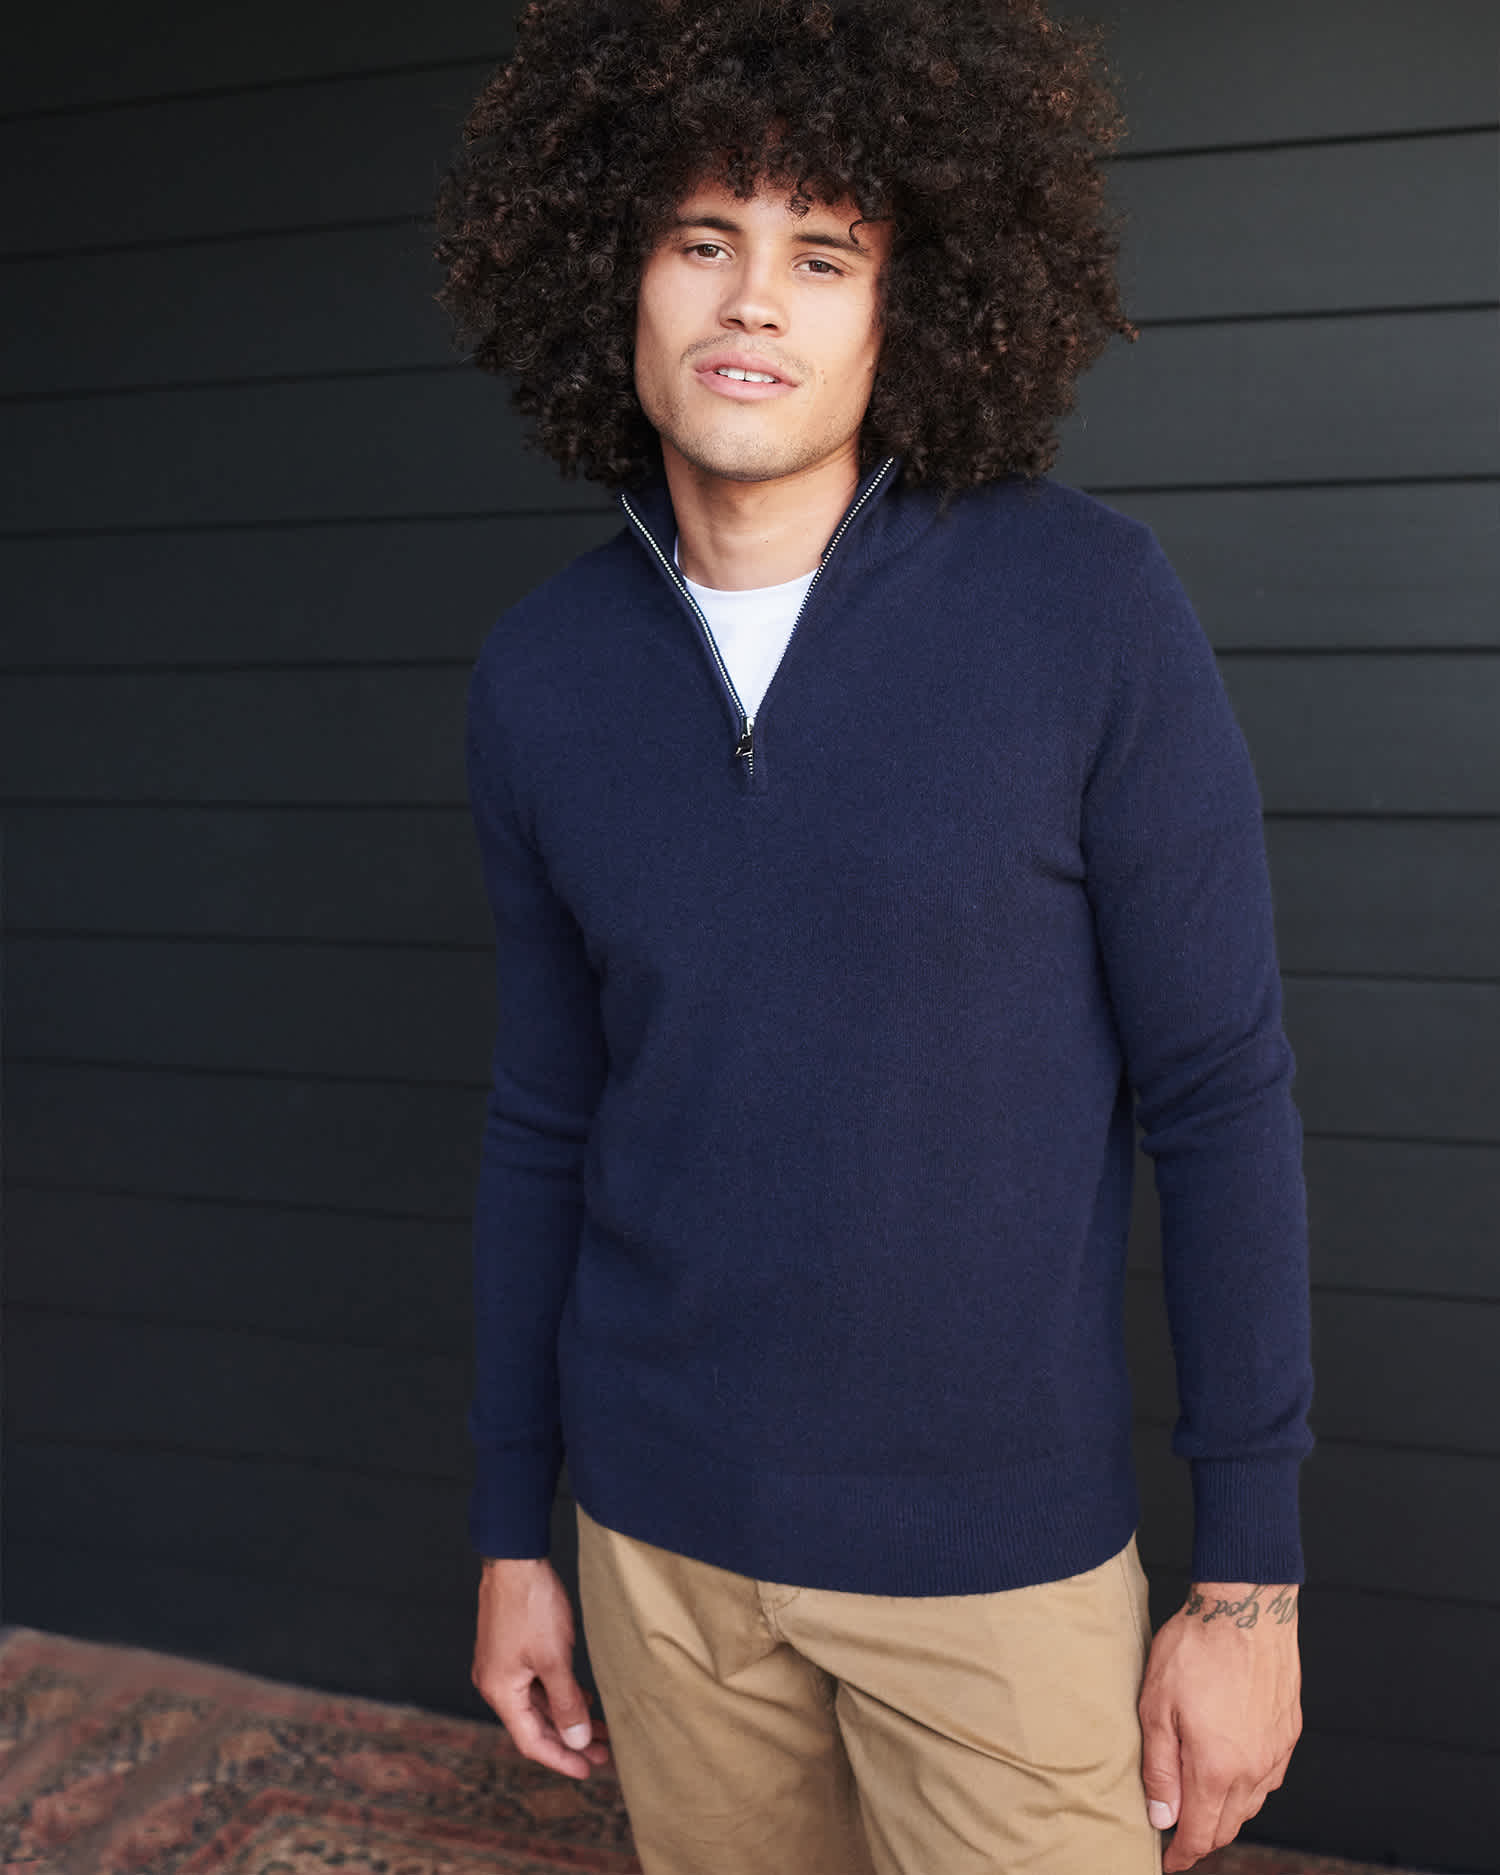 Man wearing navy cashmere quarter zip sweater smiling